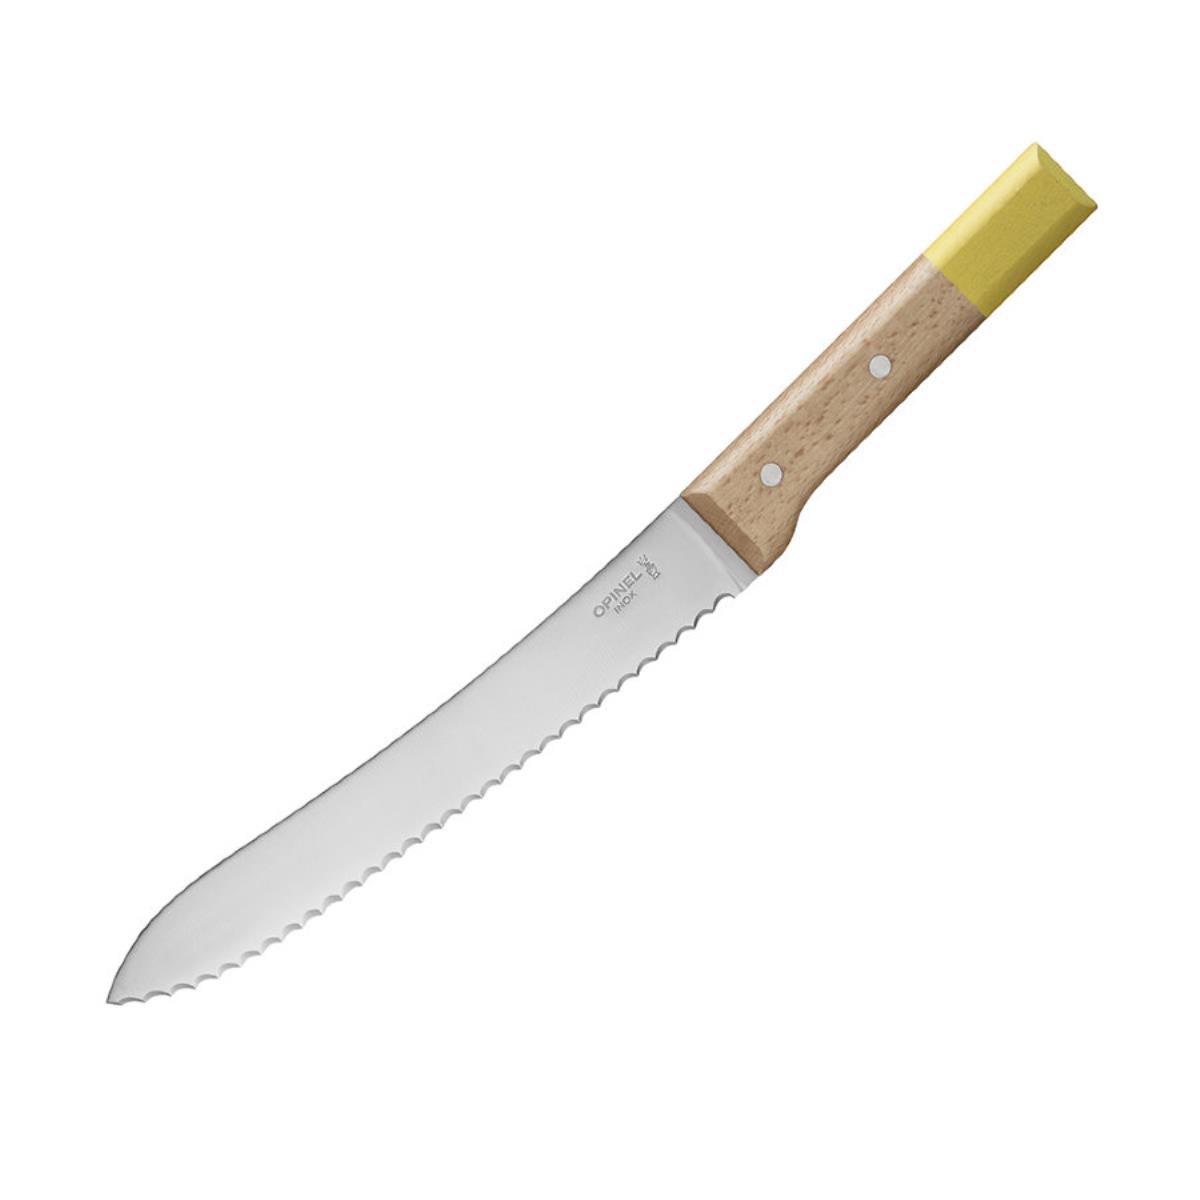 Нож кухонный №116 VRI Parallele для хлеба (нерж. сталь, рукоять бук, длина клинка 21 см) OPINEL доска для нарезки хлеба 22х37 см массив бука